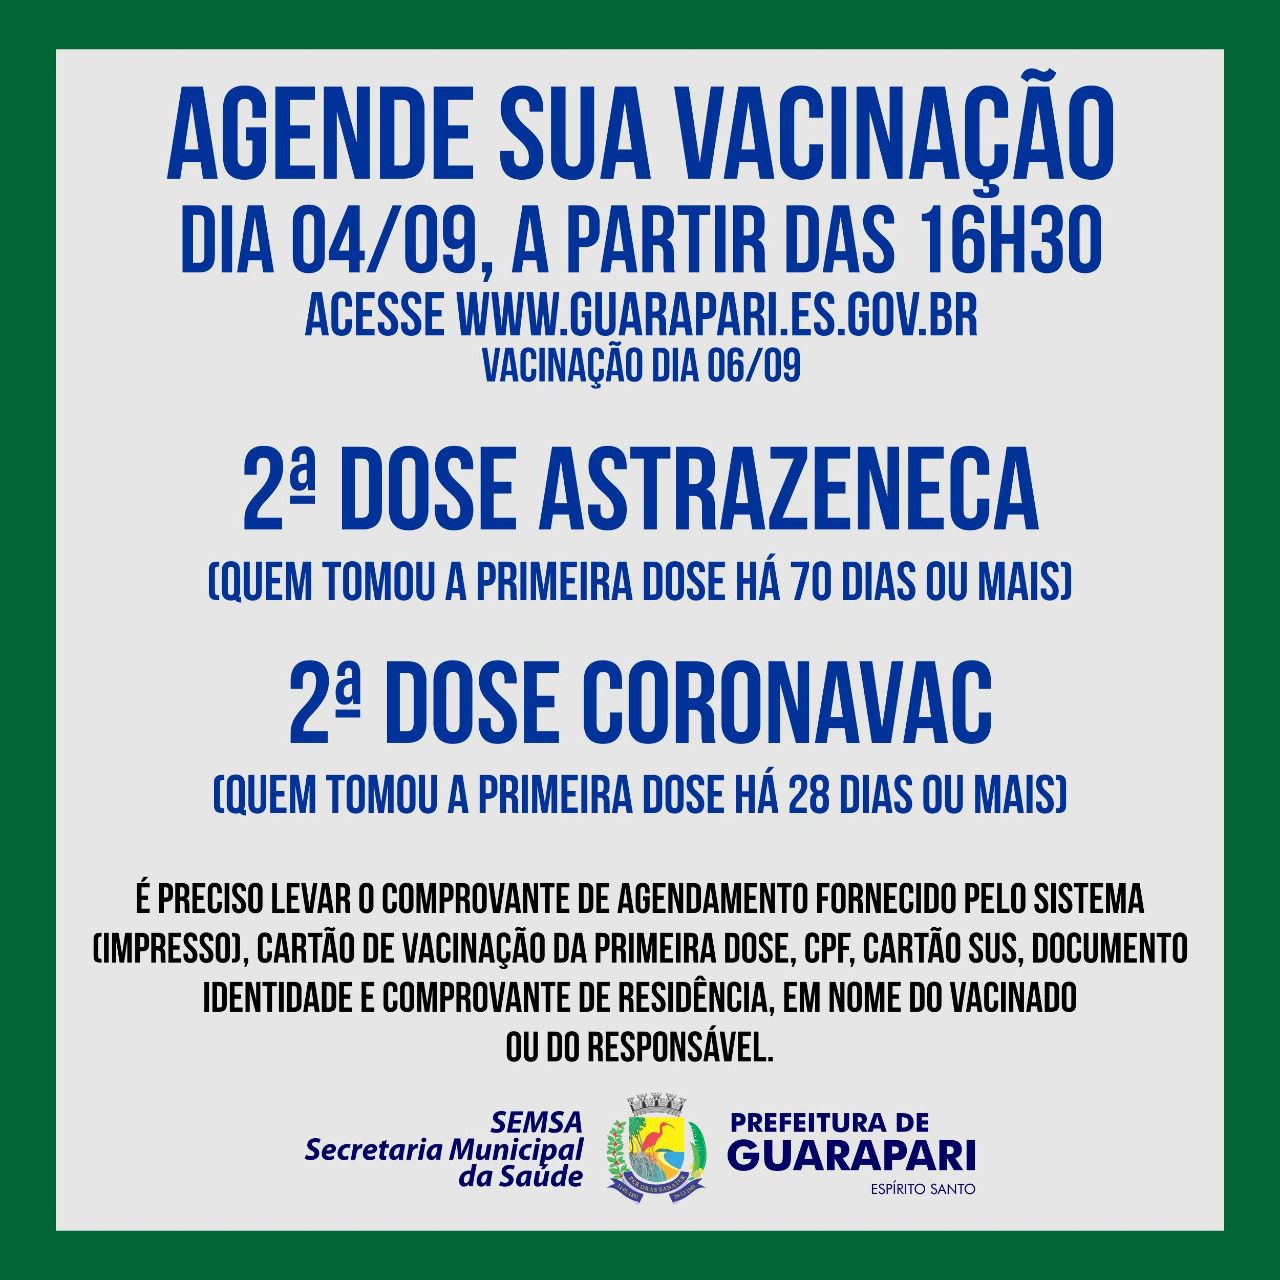 Vacinação contra Covid-19: Prefeitura de Guarapari abre novo agendamento para segunda dose de AstraZeneca e Coronavac